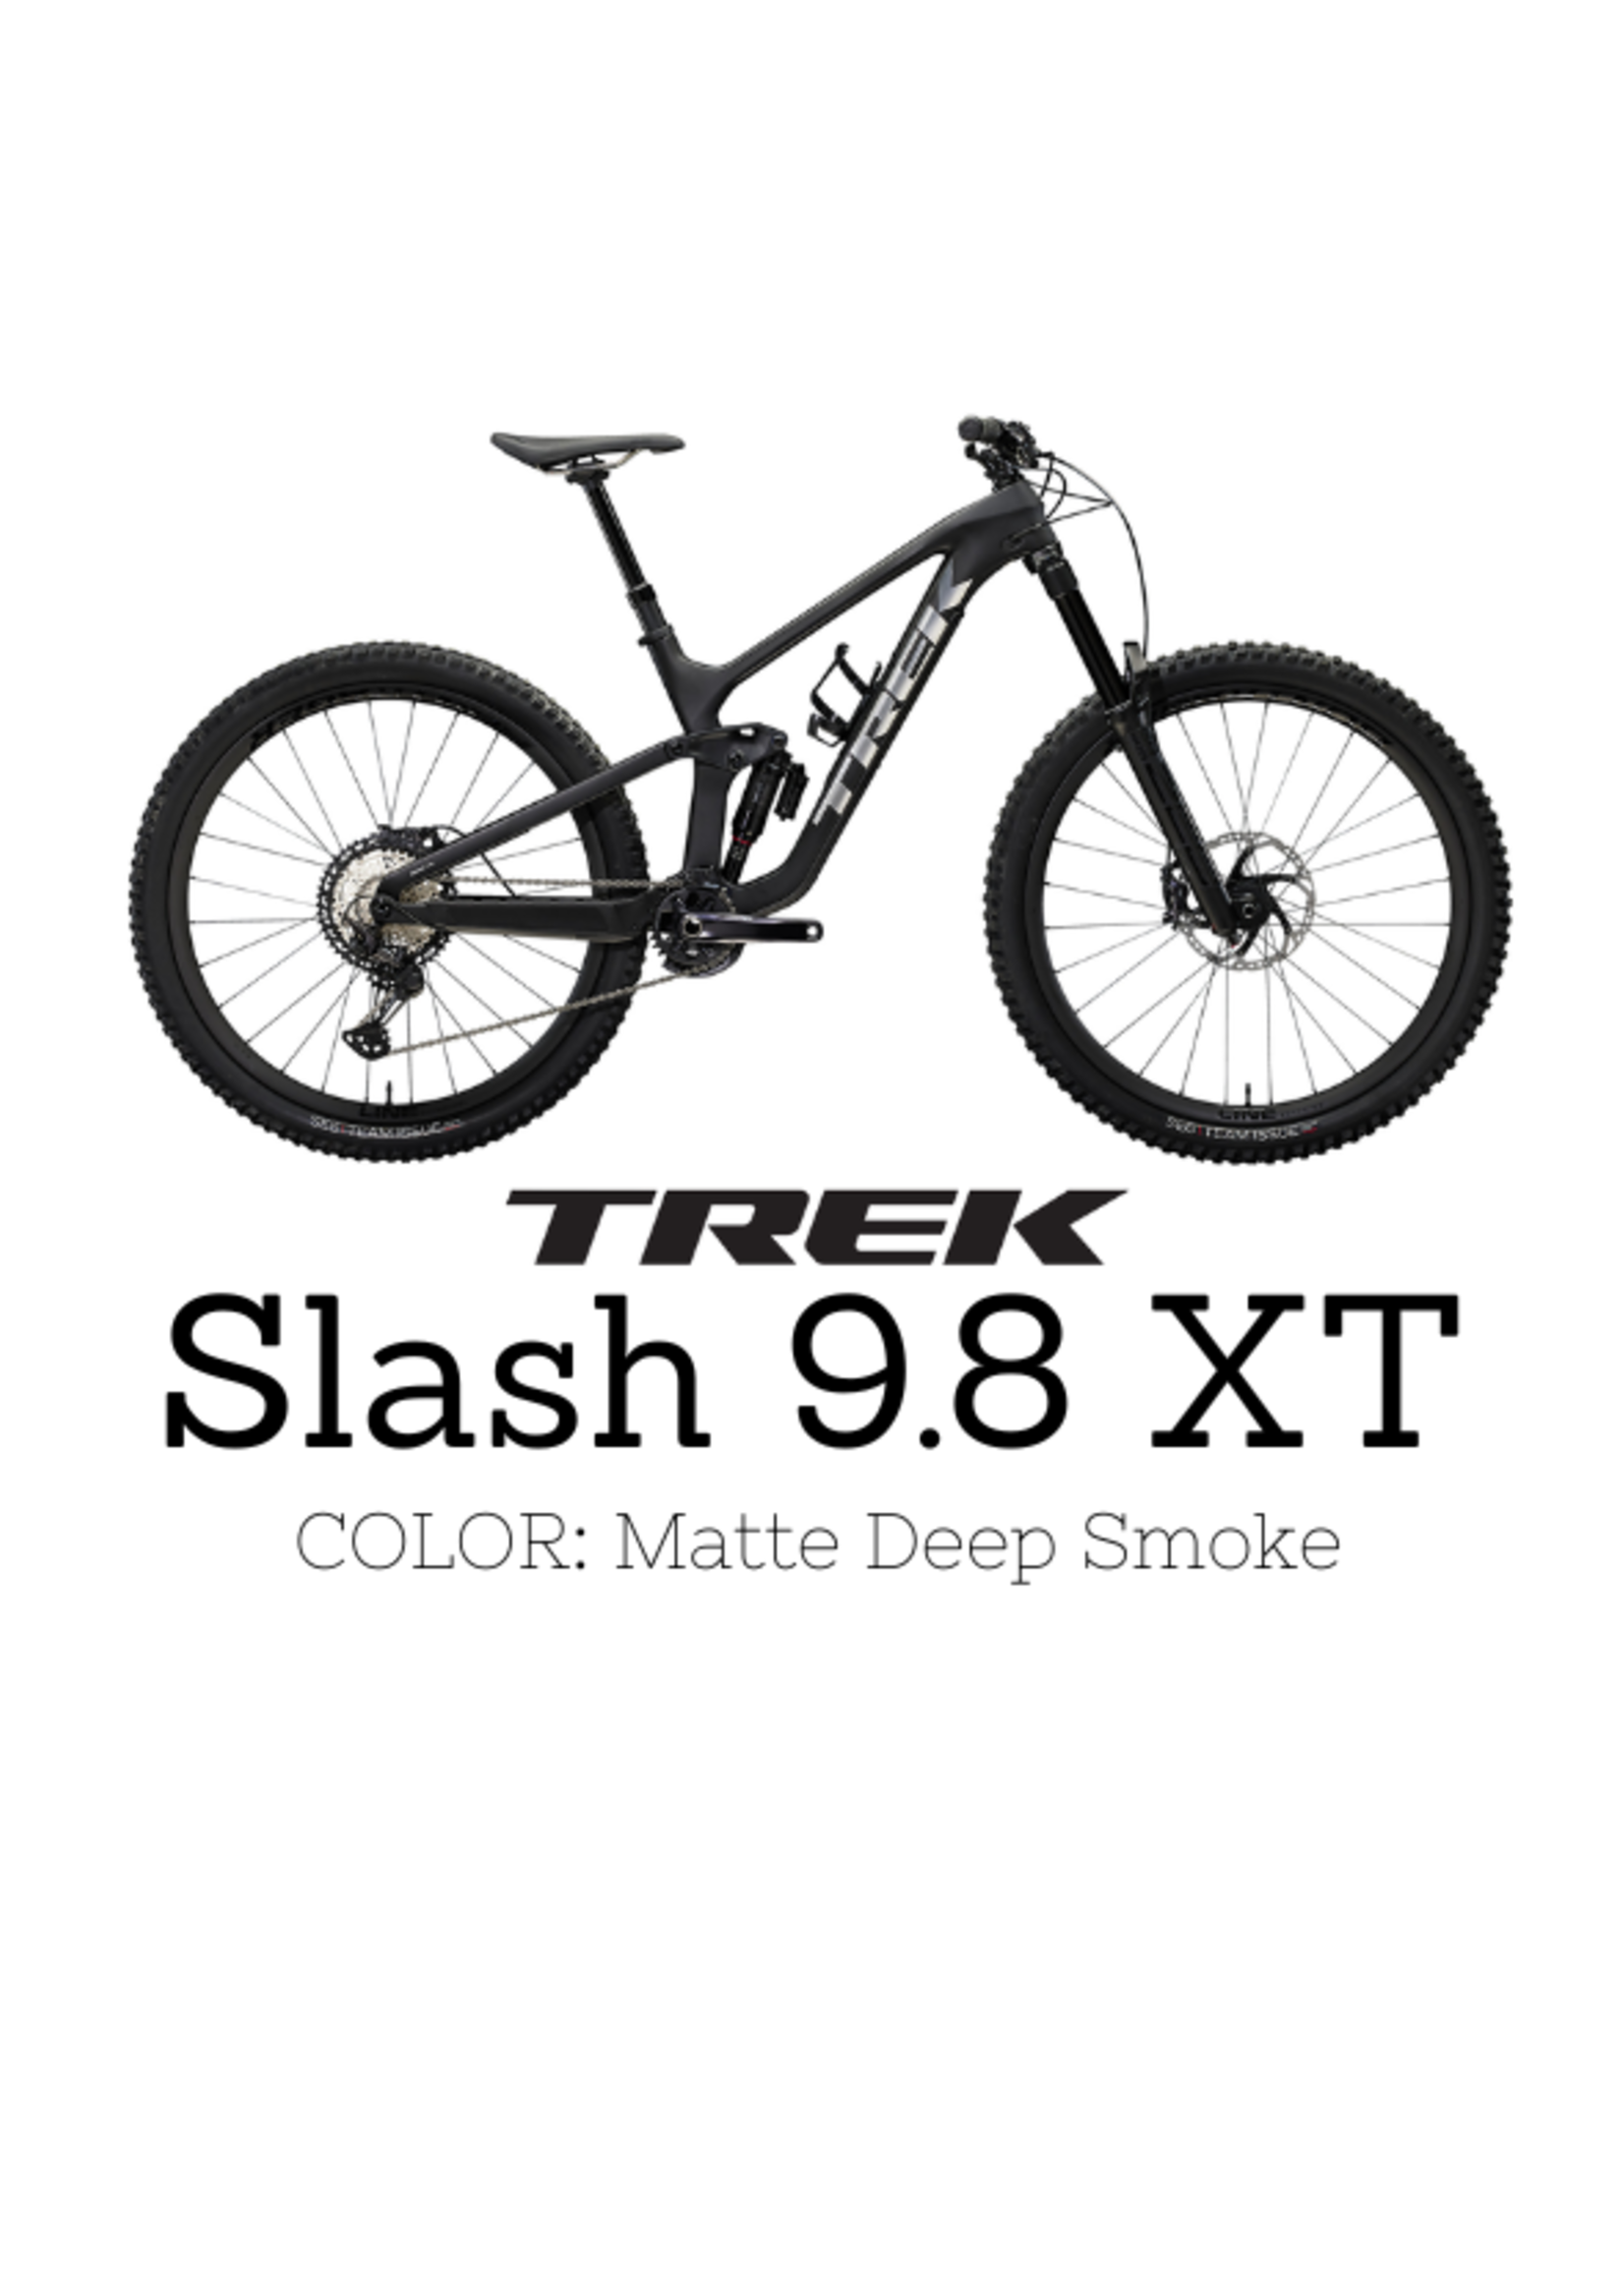 TREK Trek Slash 9.8 XT